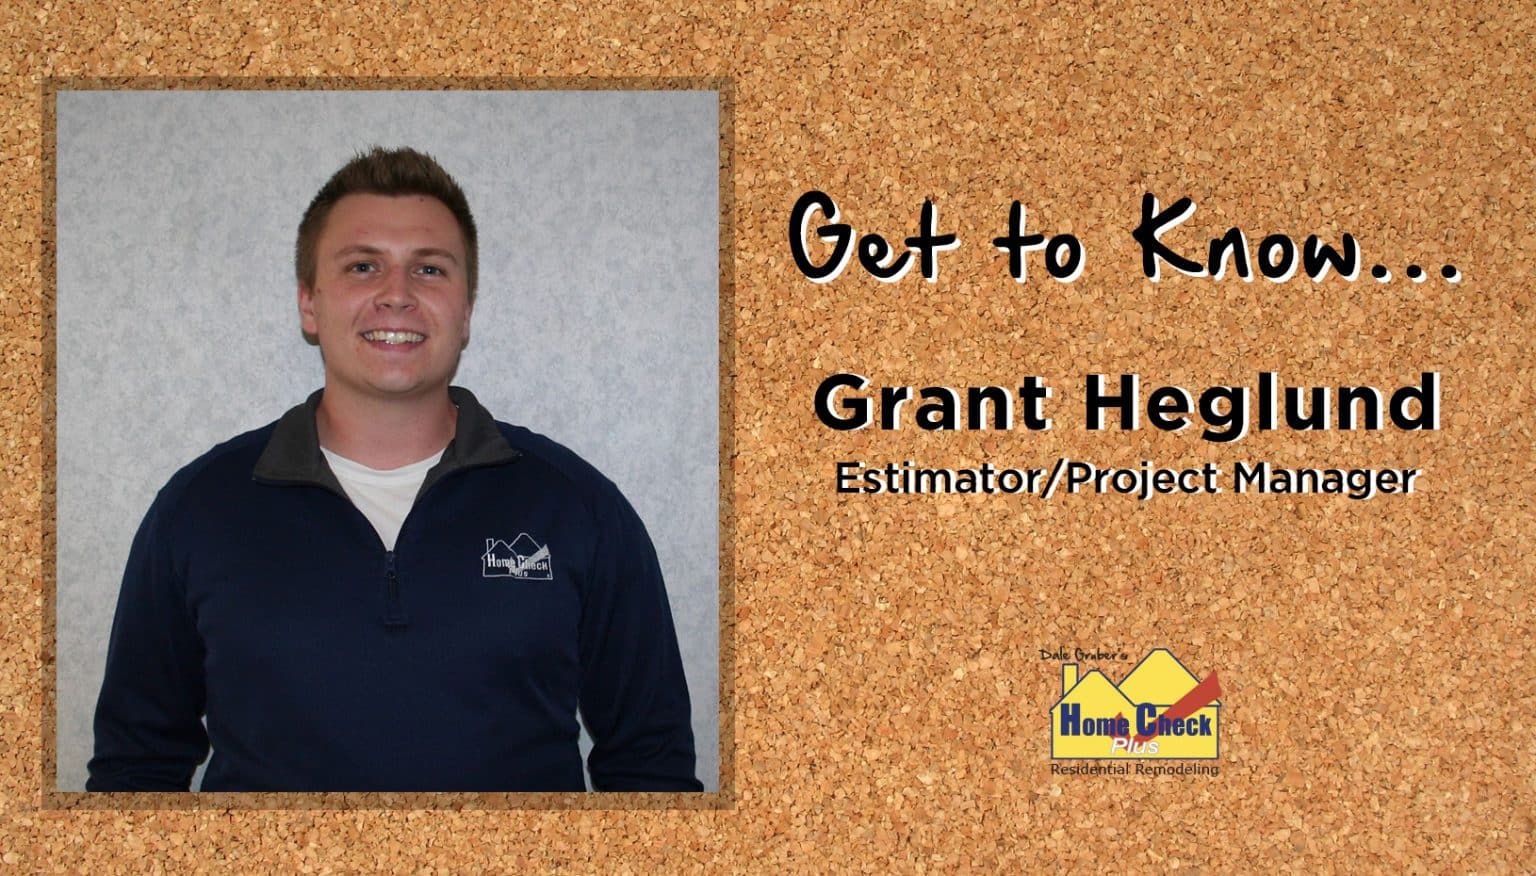 Get to know Grant Heglund